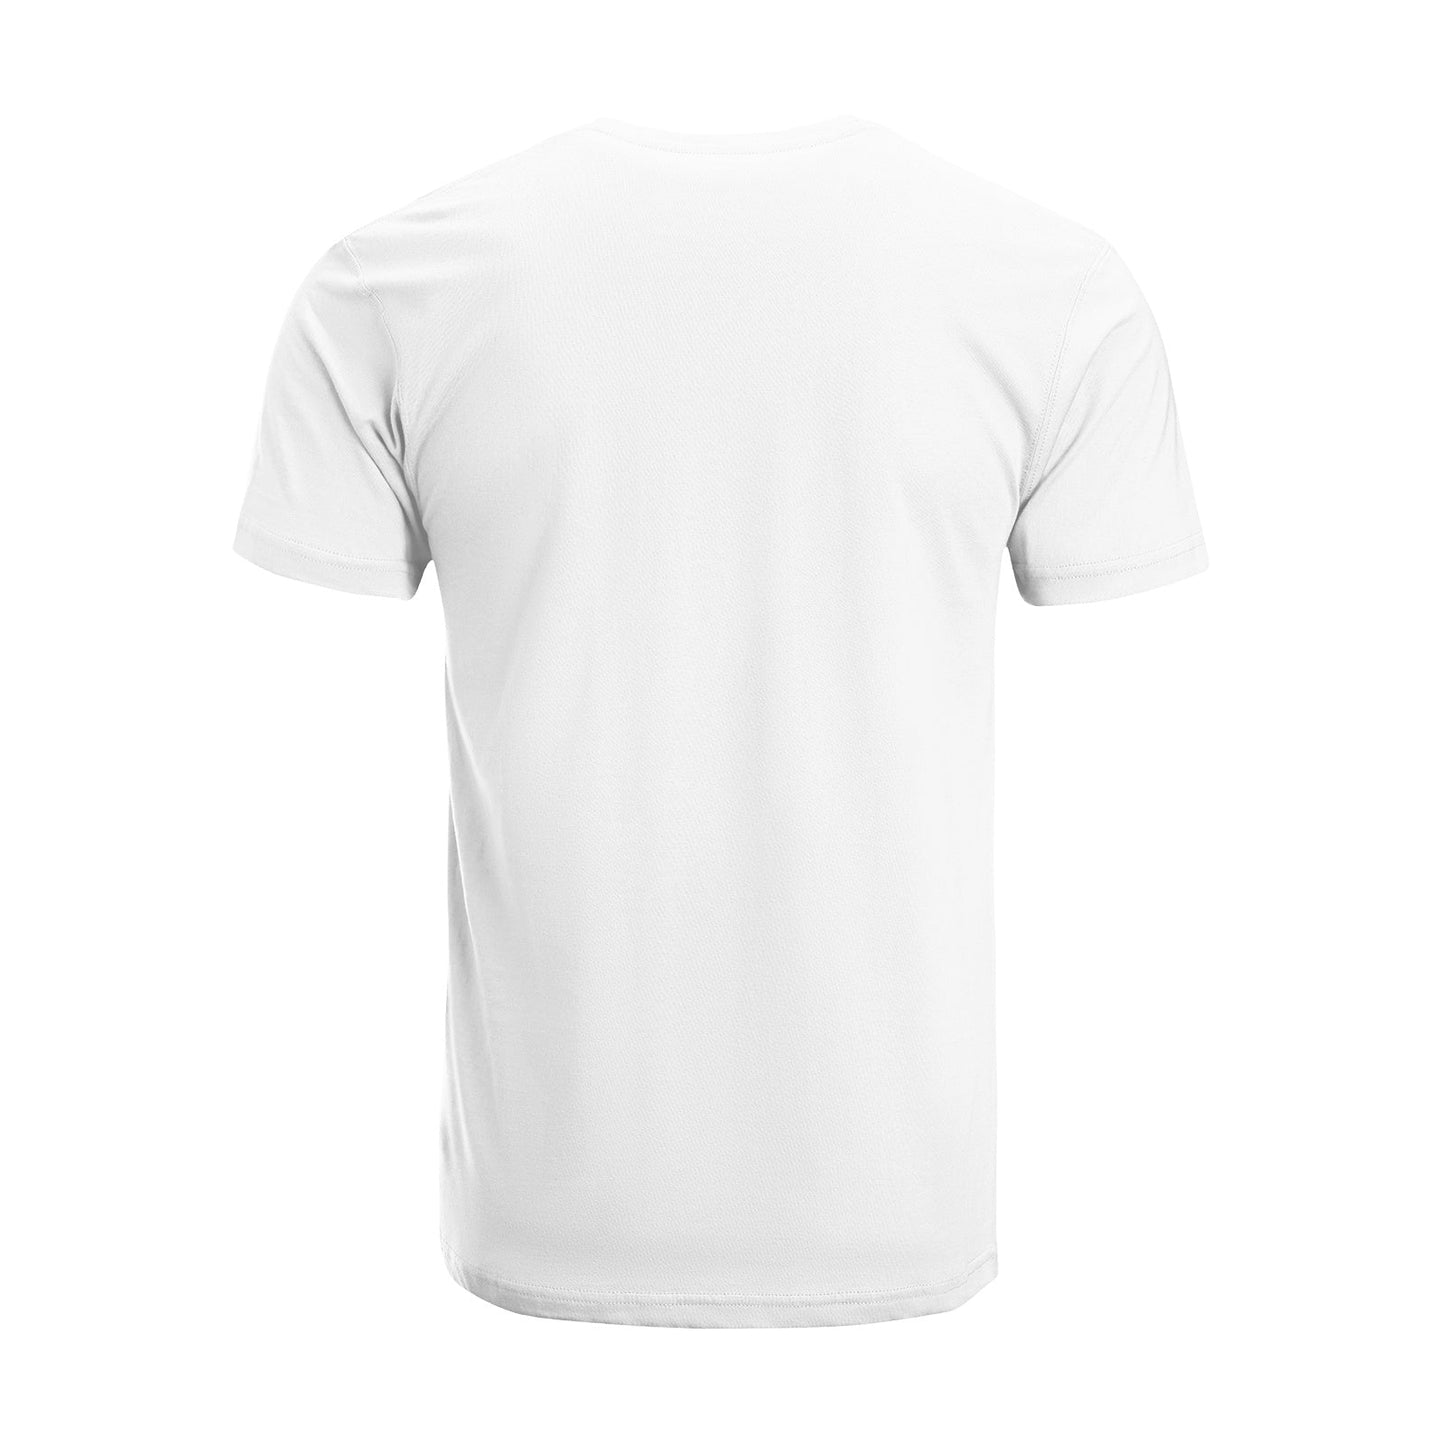 Unisex Short Sleeve Crew Neck Cotton Jersey T-Shirt TRUCK 37